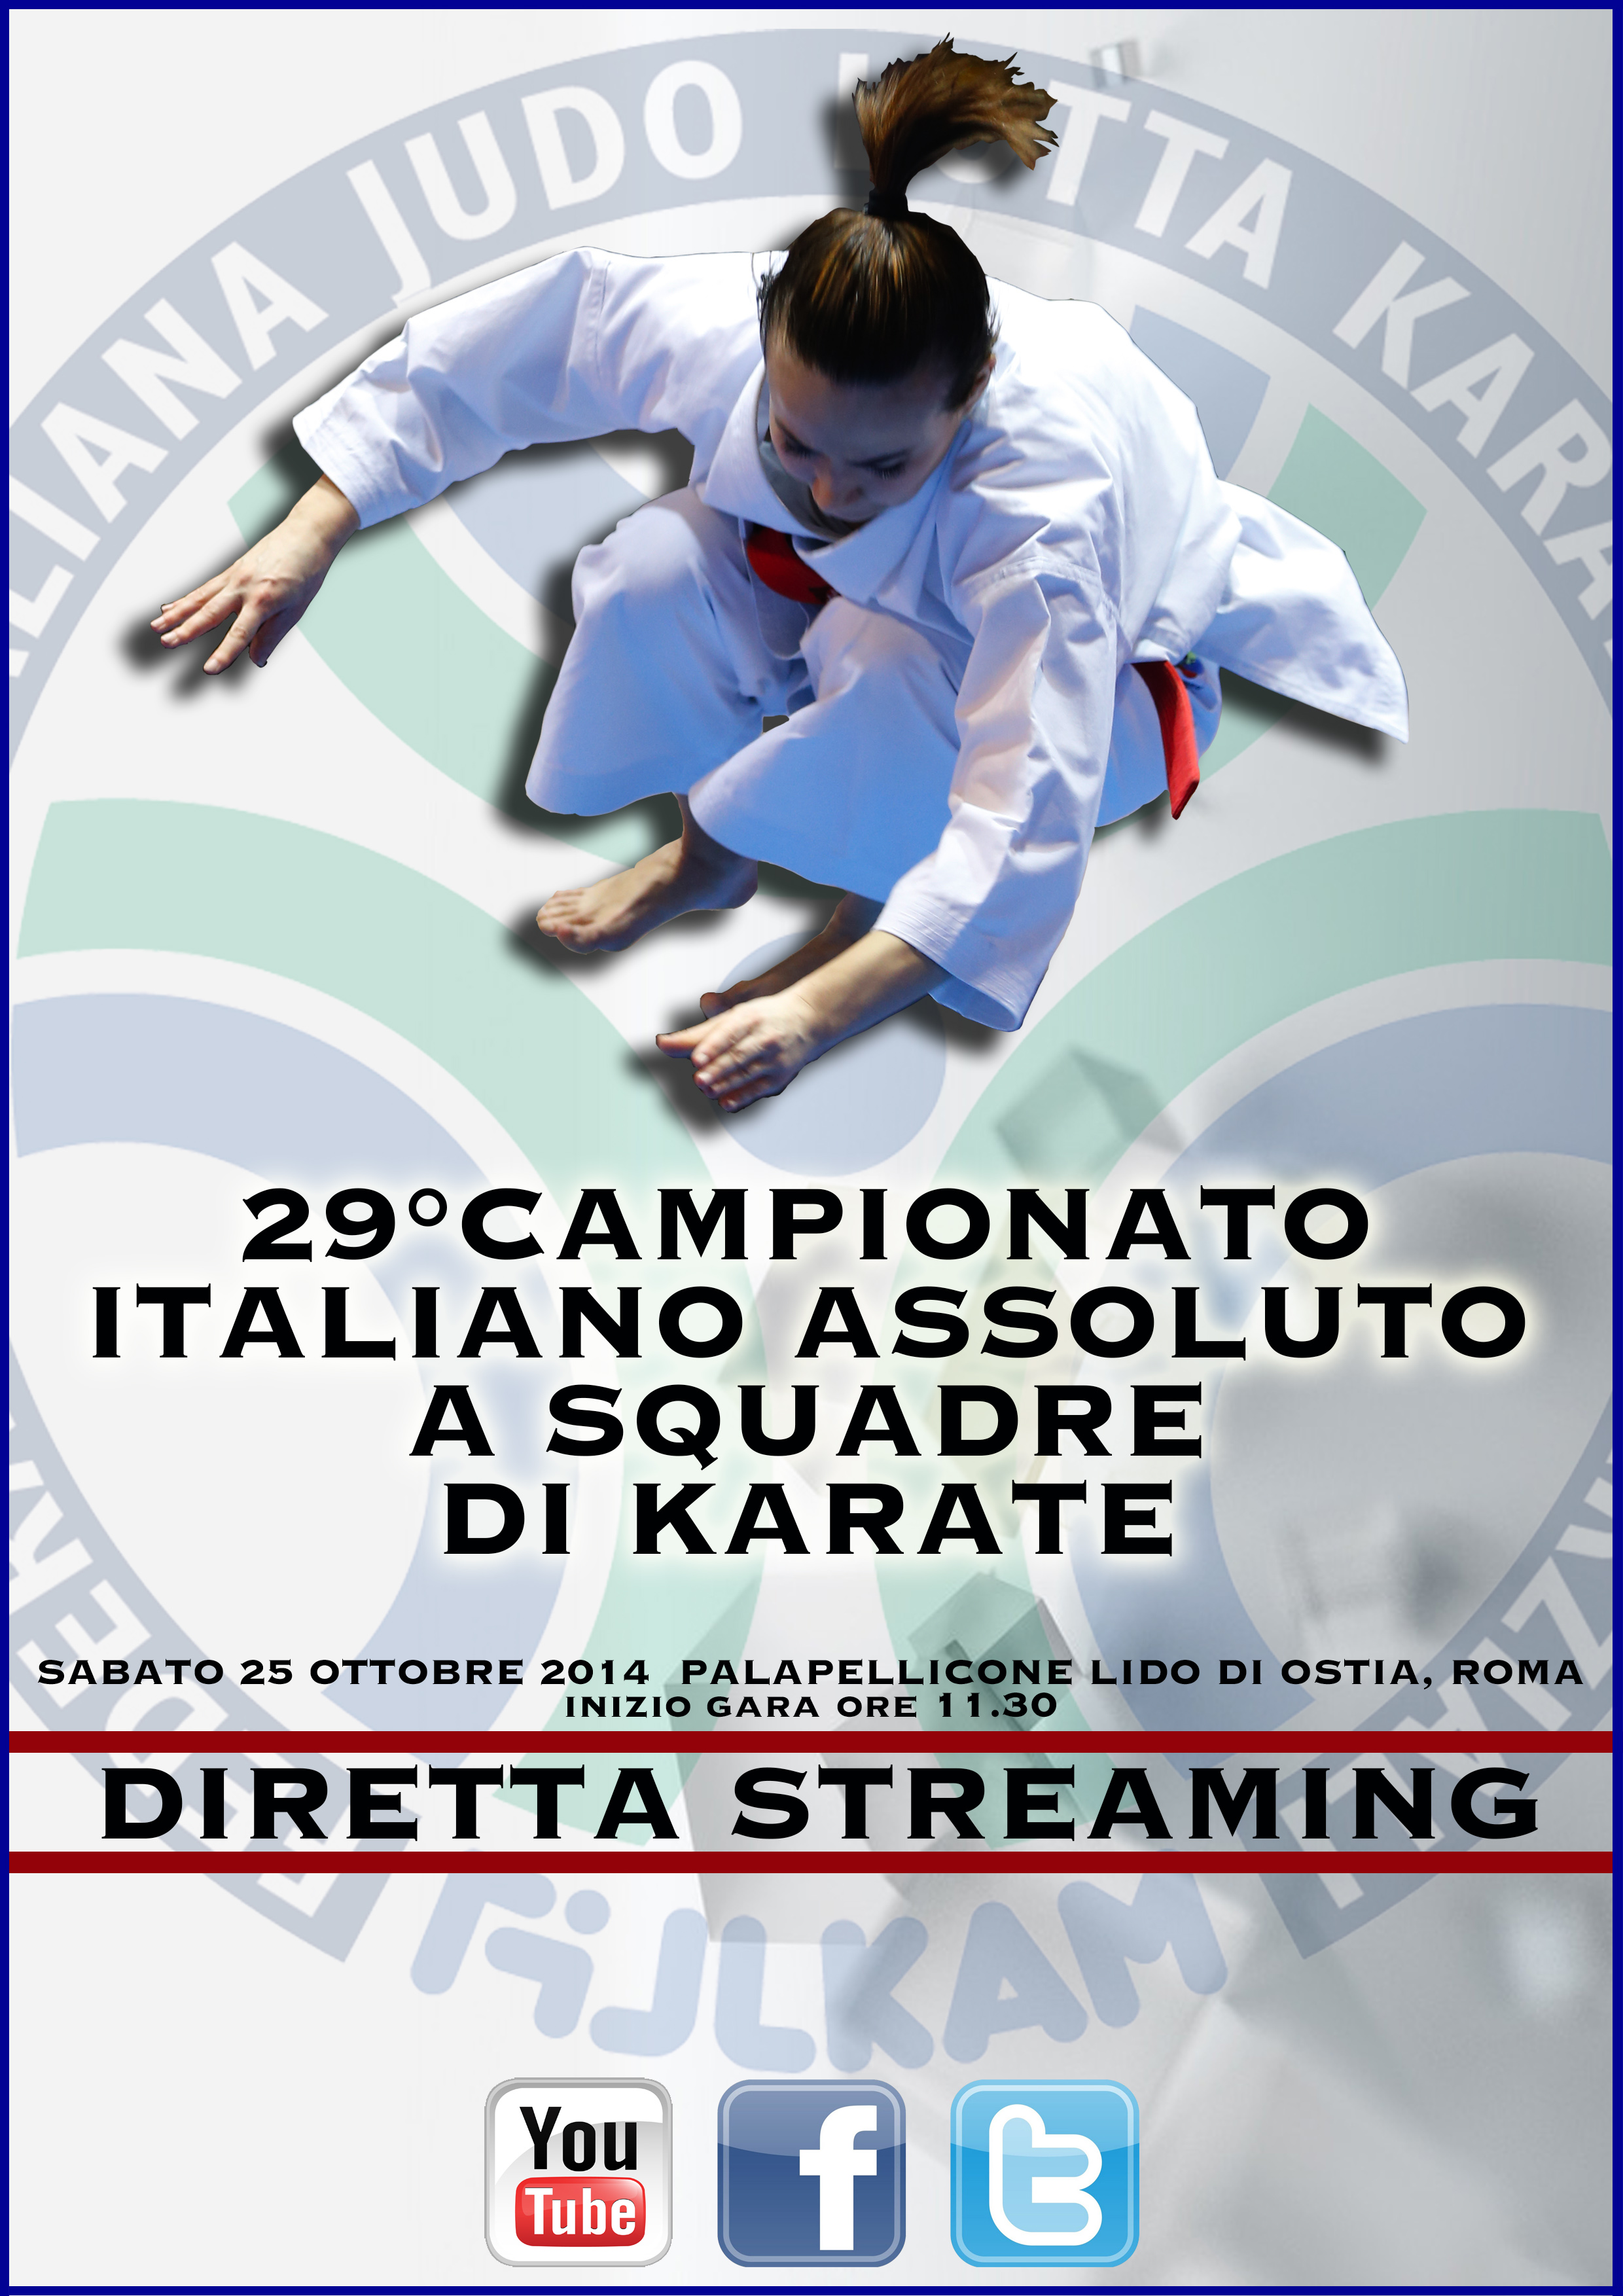 Tutto pronto per il 29° Campionato Italiano Assoluto a Squadre Sociali di Karate